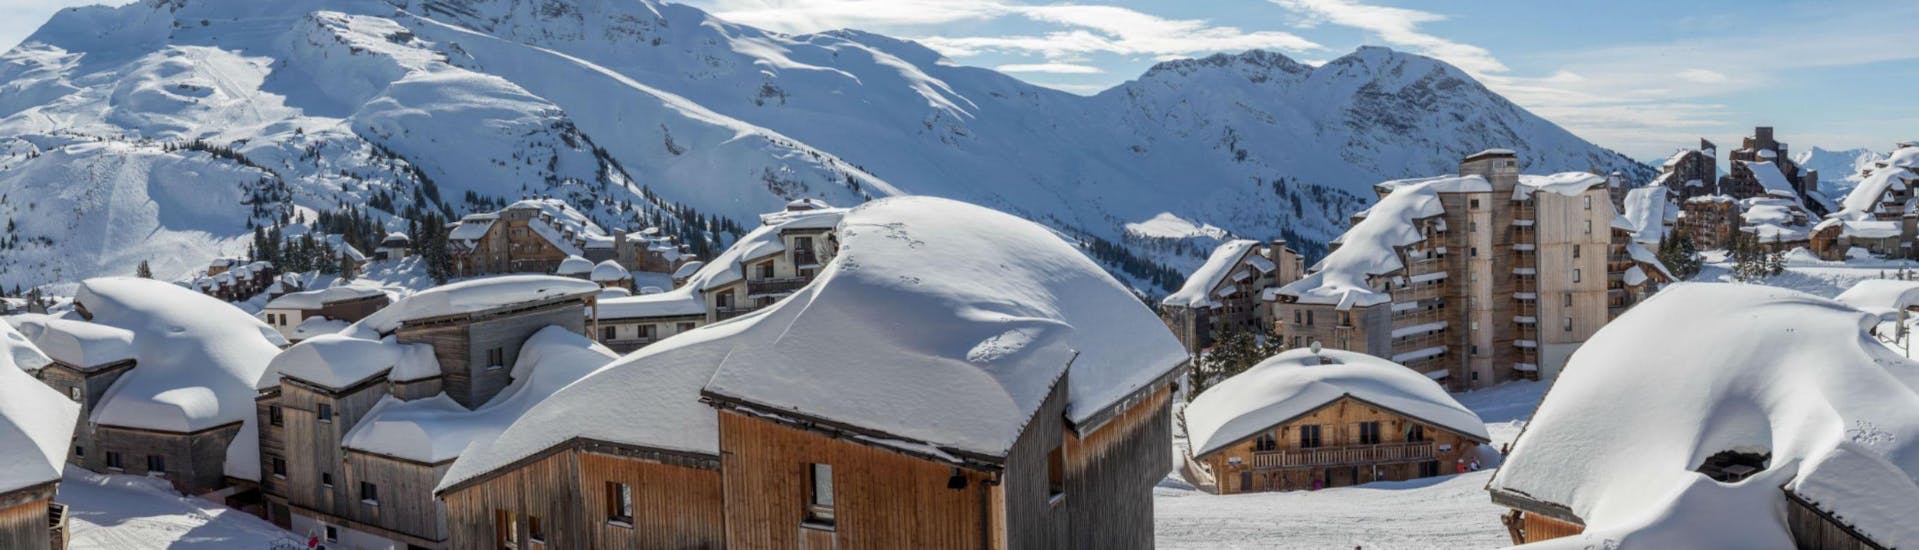 Une vue panoramique des chalets et hôtels recouverts de neige de la station de ski française d'Avoriaz, où les écoles de ski locales proposent un large choix de cours de ski.